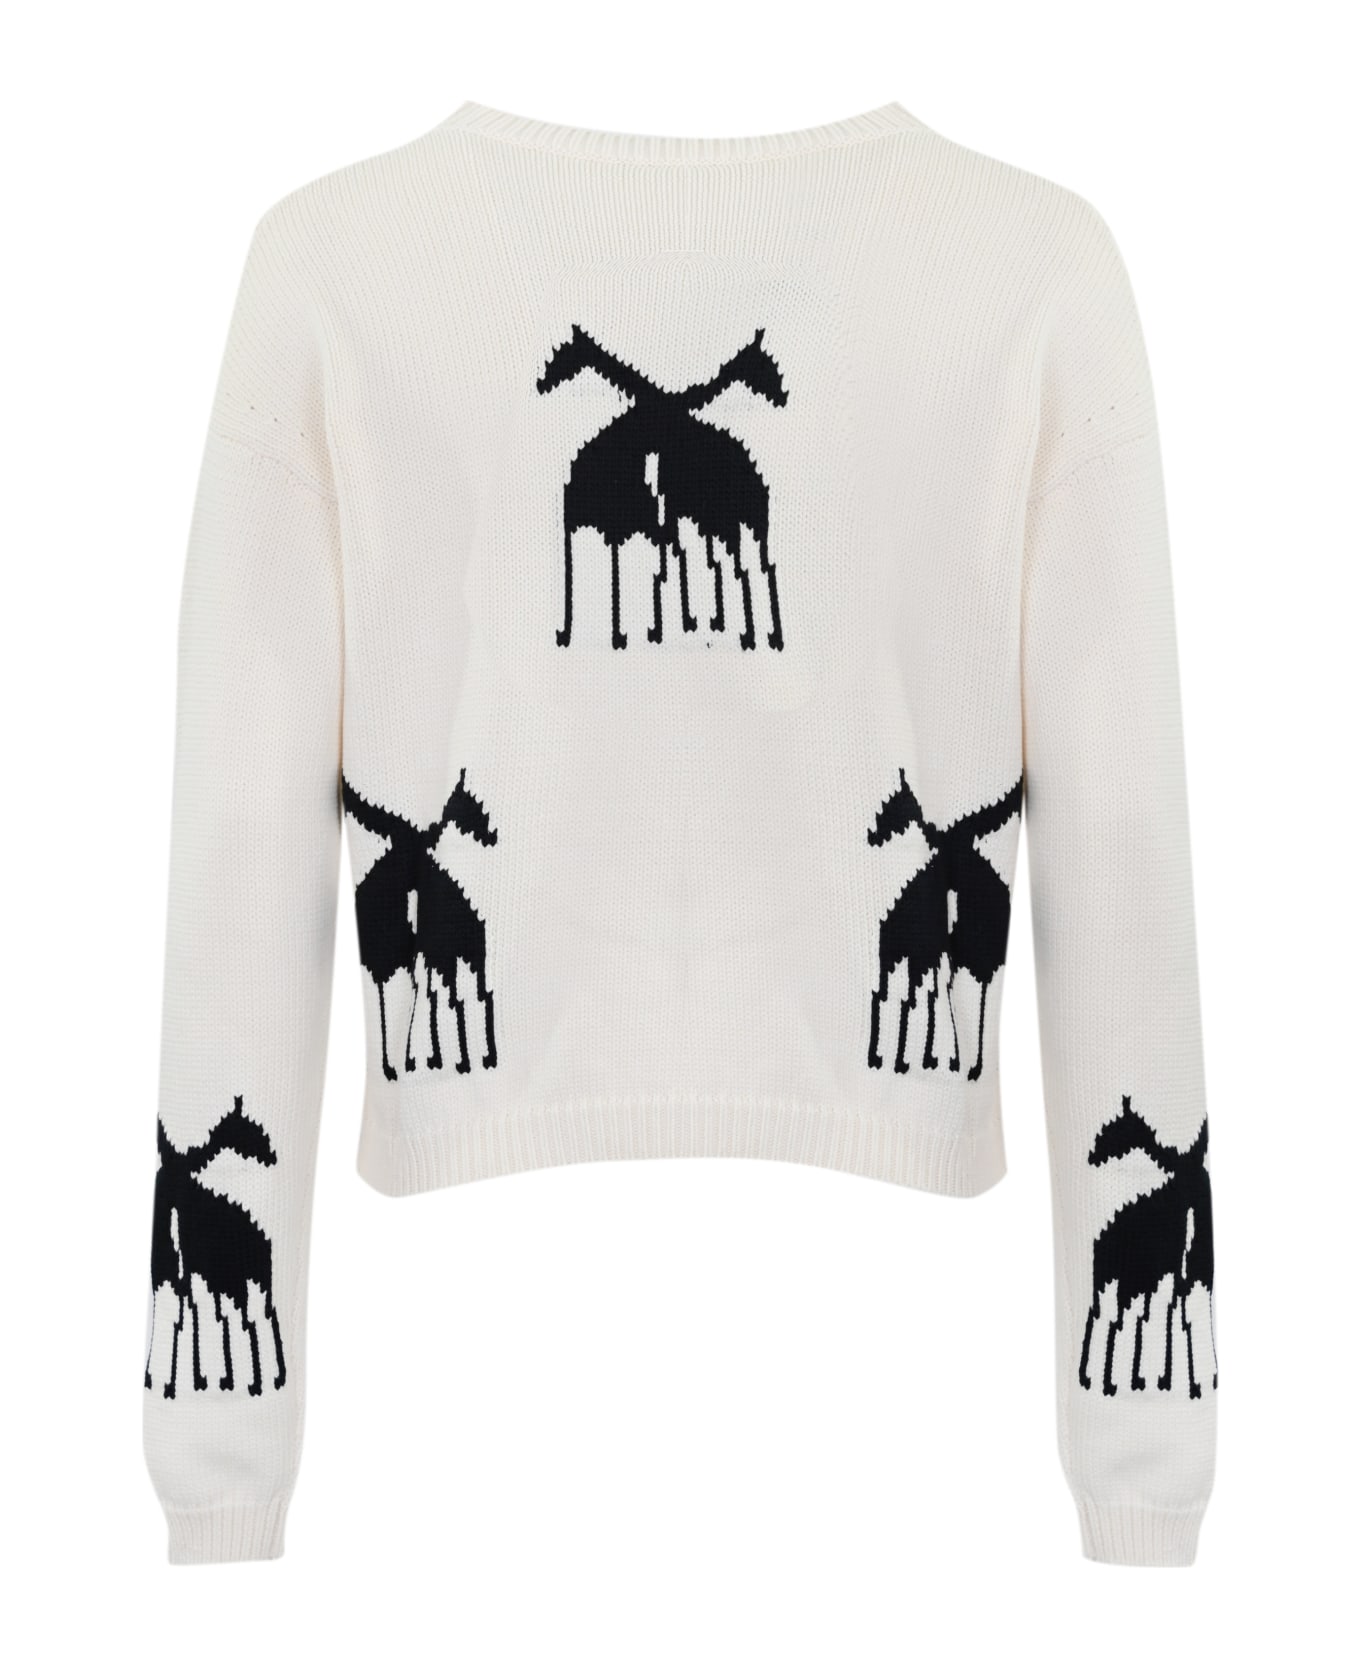 Max Mara Studio "unno" Sweater In Jacquard Cotton Blend - Dis. giraffa